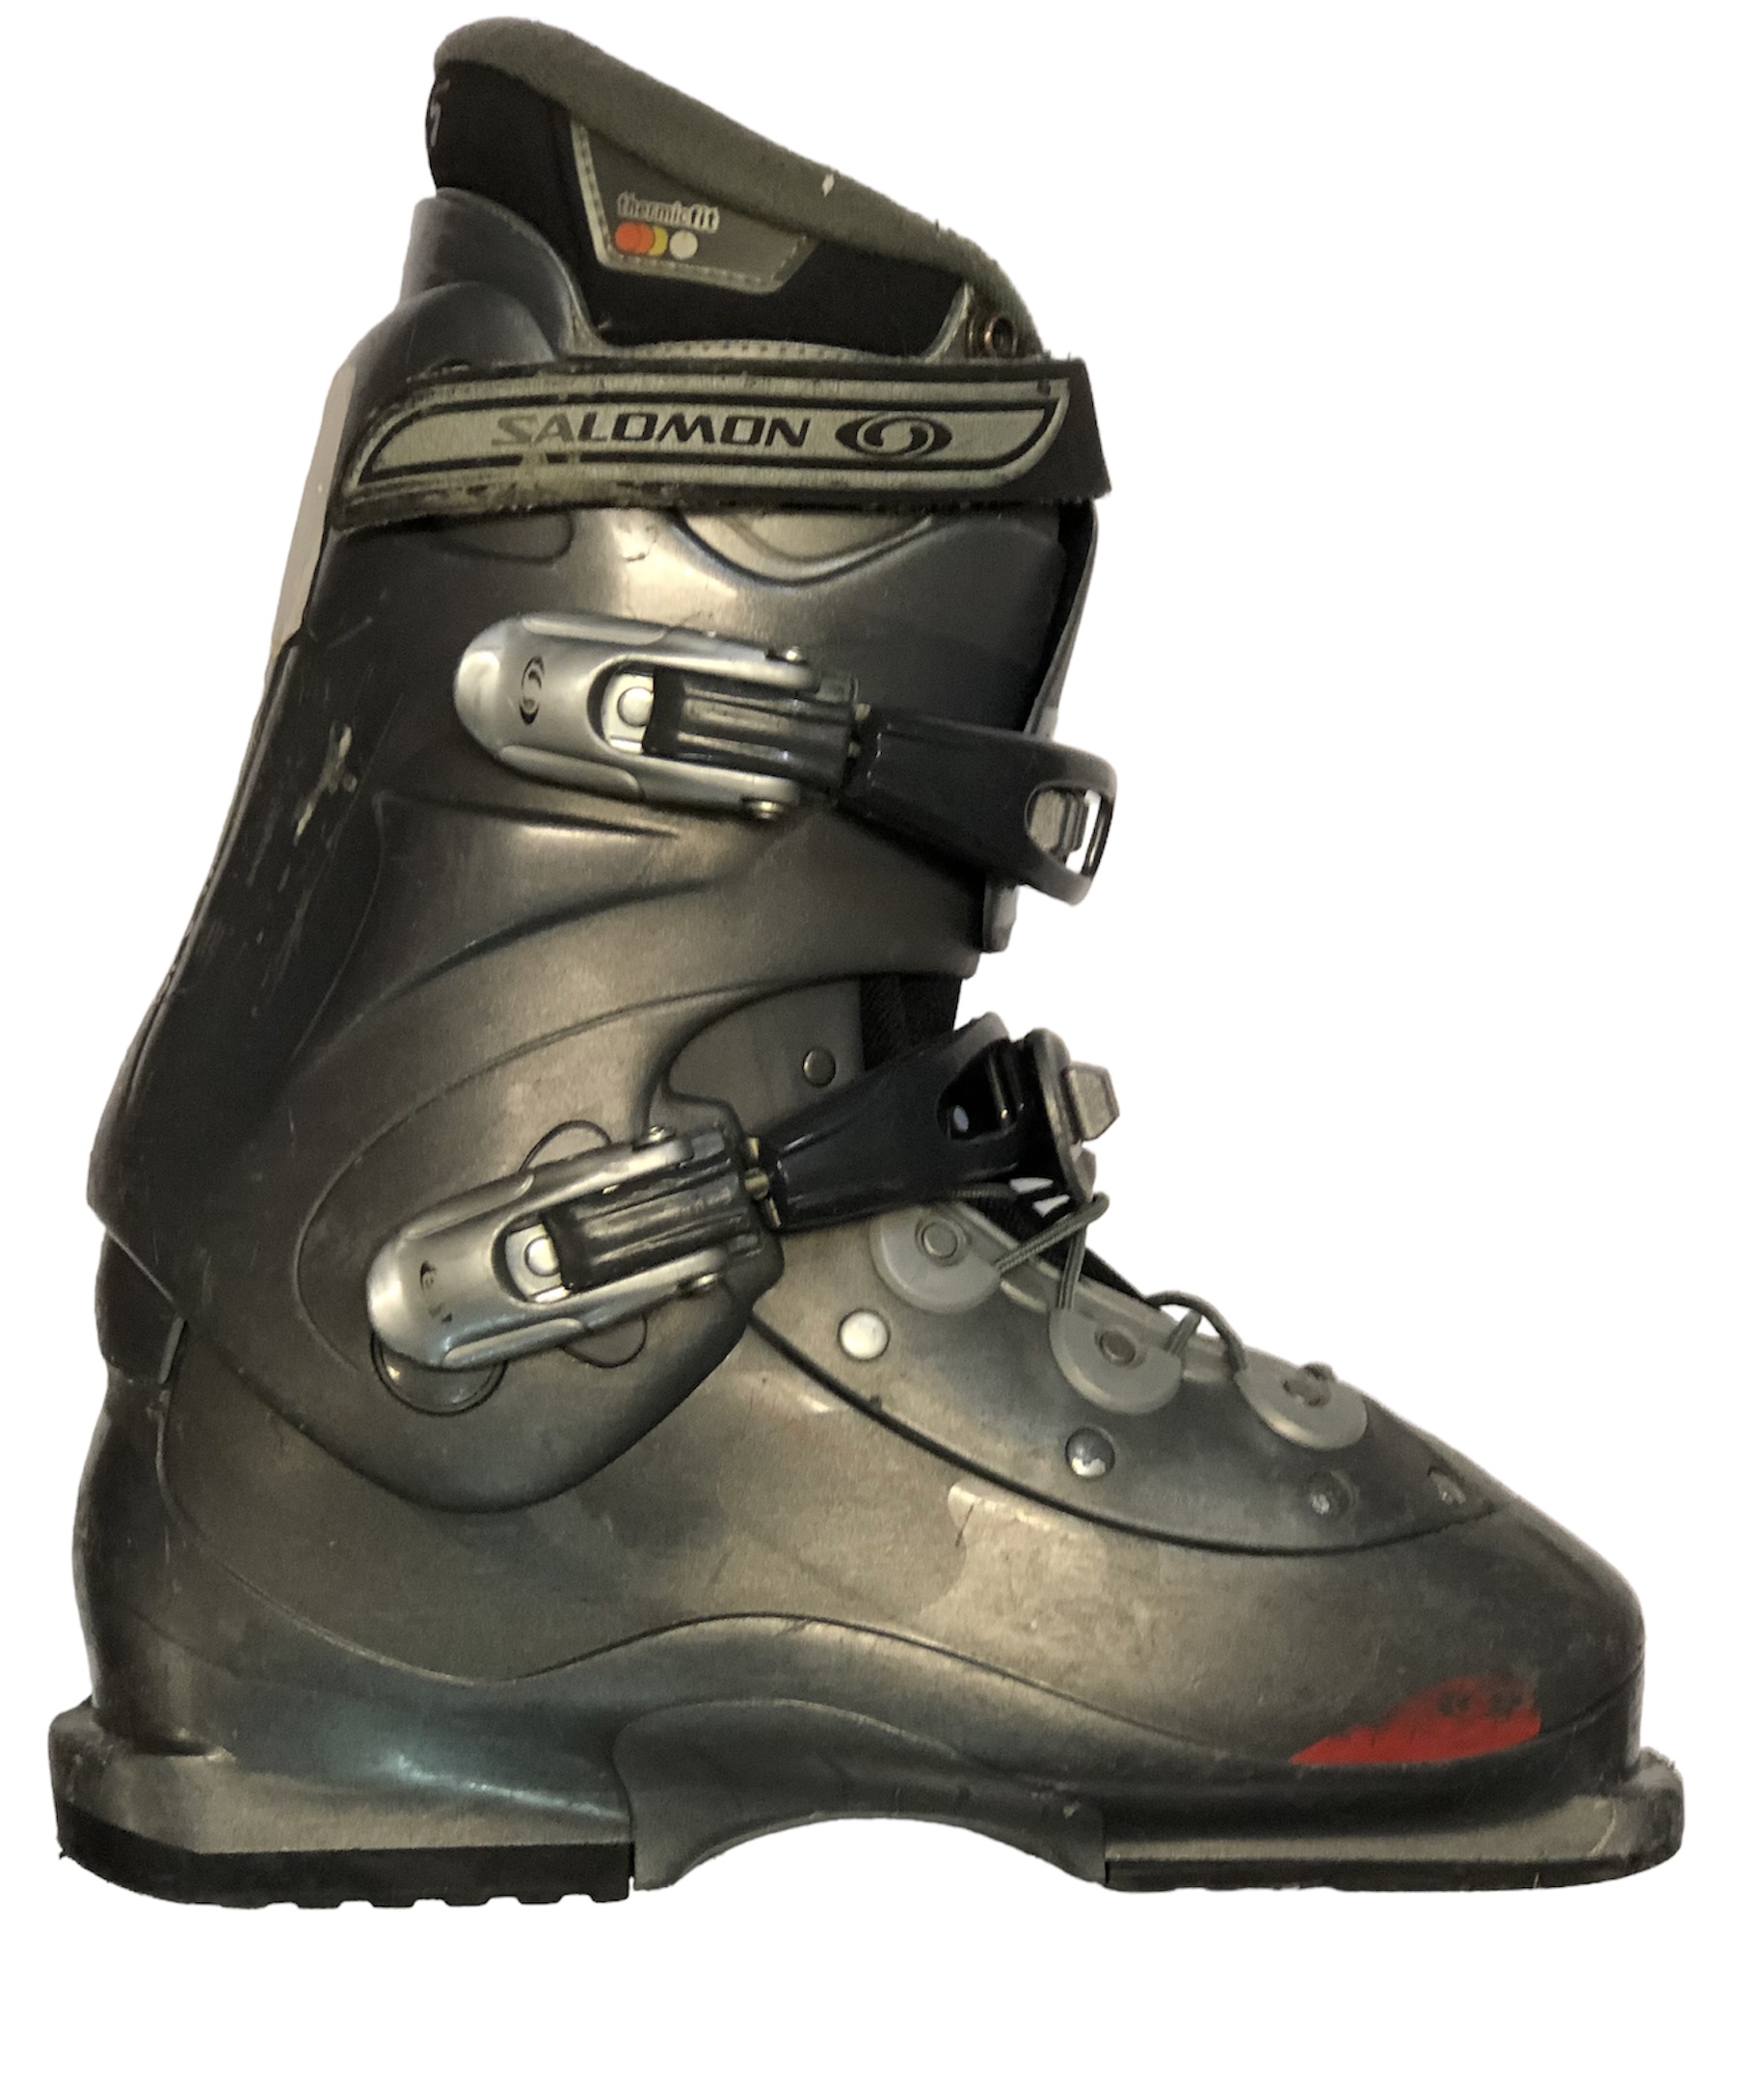 Używane buty narciarskie SALOMON 26/307mm rozmiar 40 :: Sklep Sportowy -  outlet sportowy, koncówki kolekcji, wyprzedaże, narty, deski, wiązania,  sprzet narciarski, buty sportowe